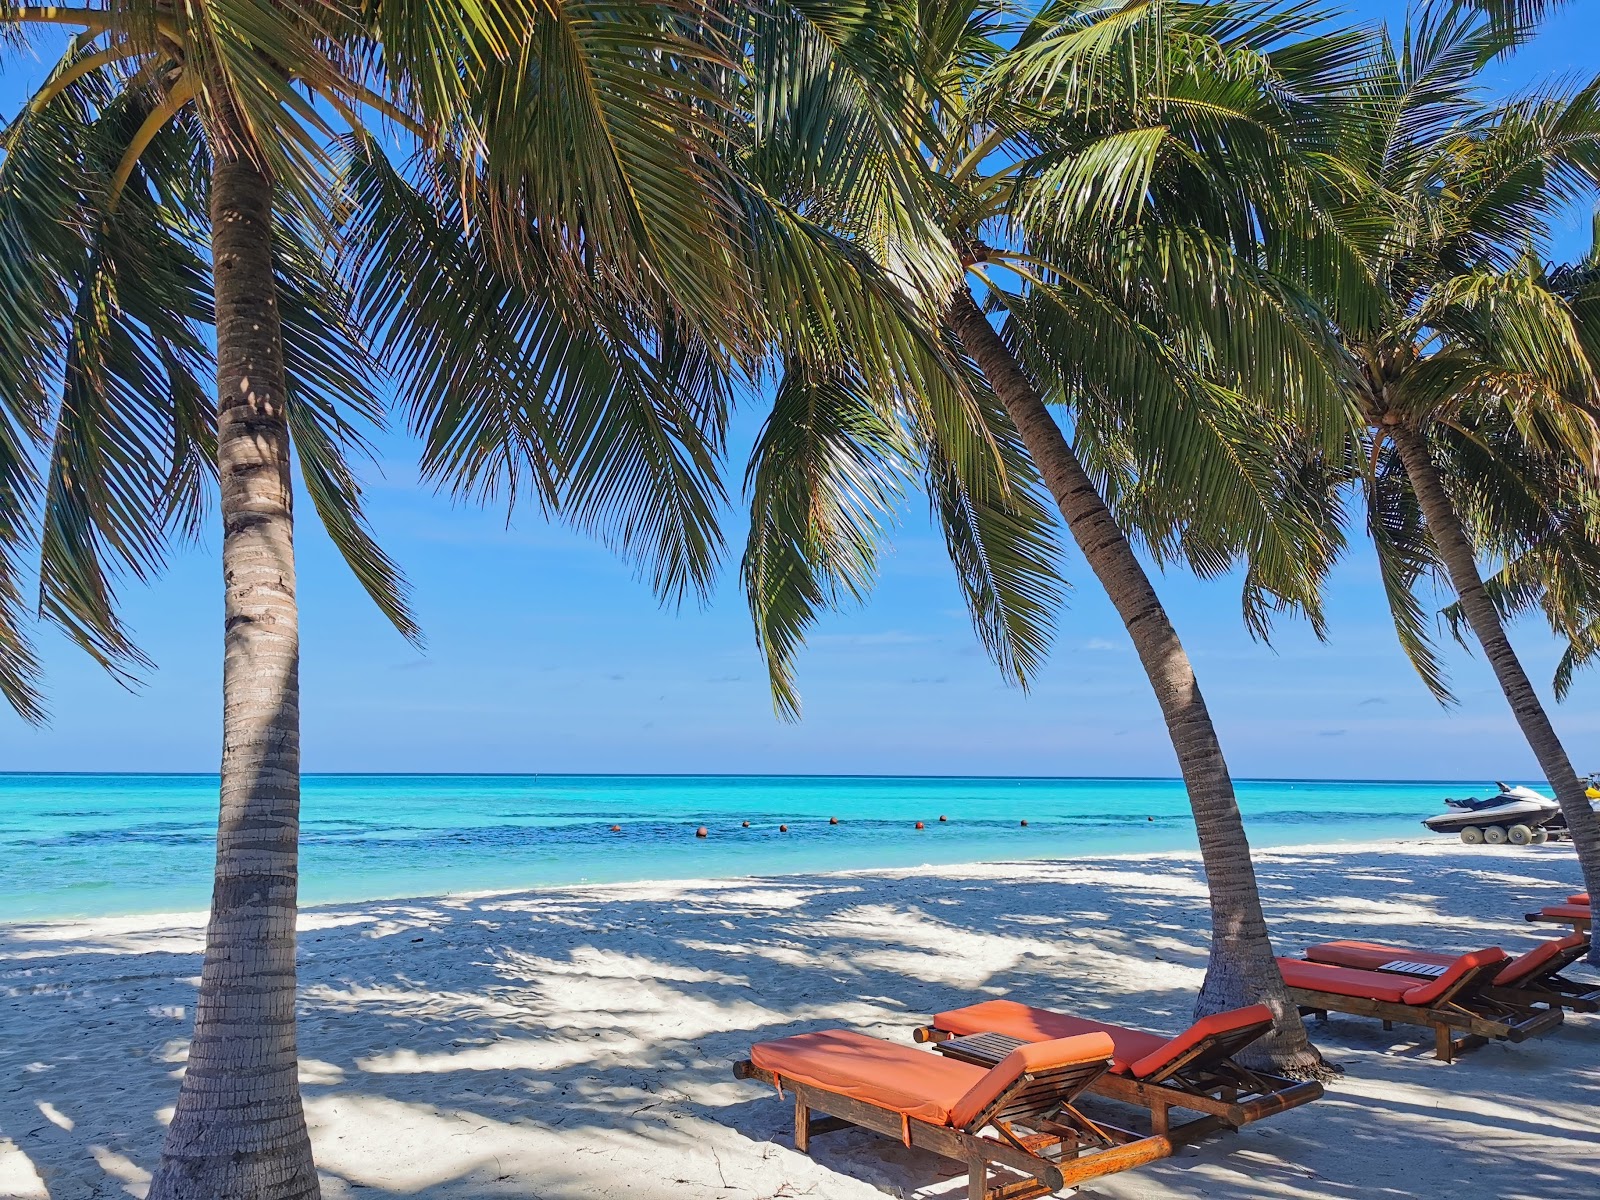 Zdjęcie Club Med Kani island z przestronna plaża